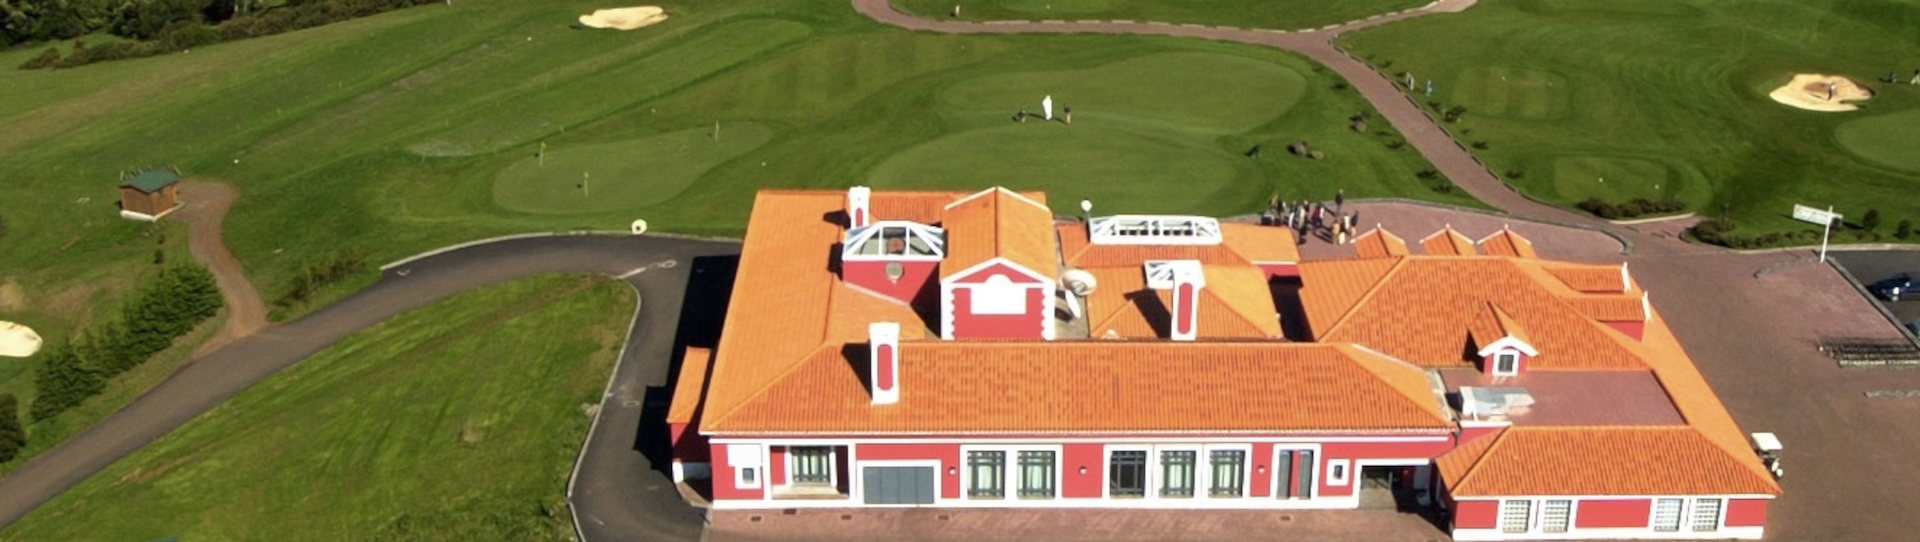 Portugal golf holidays - Santo da Serra Week Unlimited Golf - Photo 2